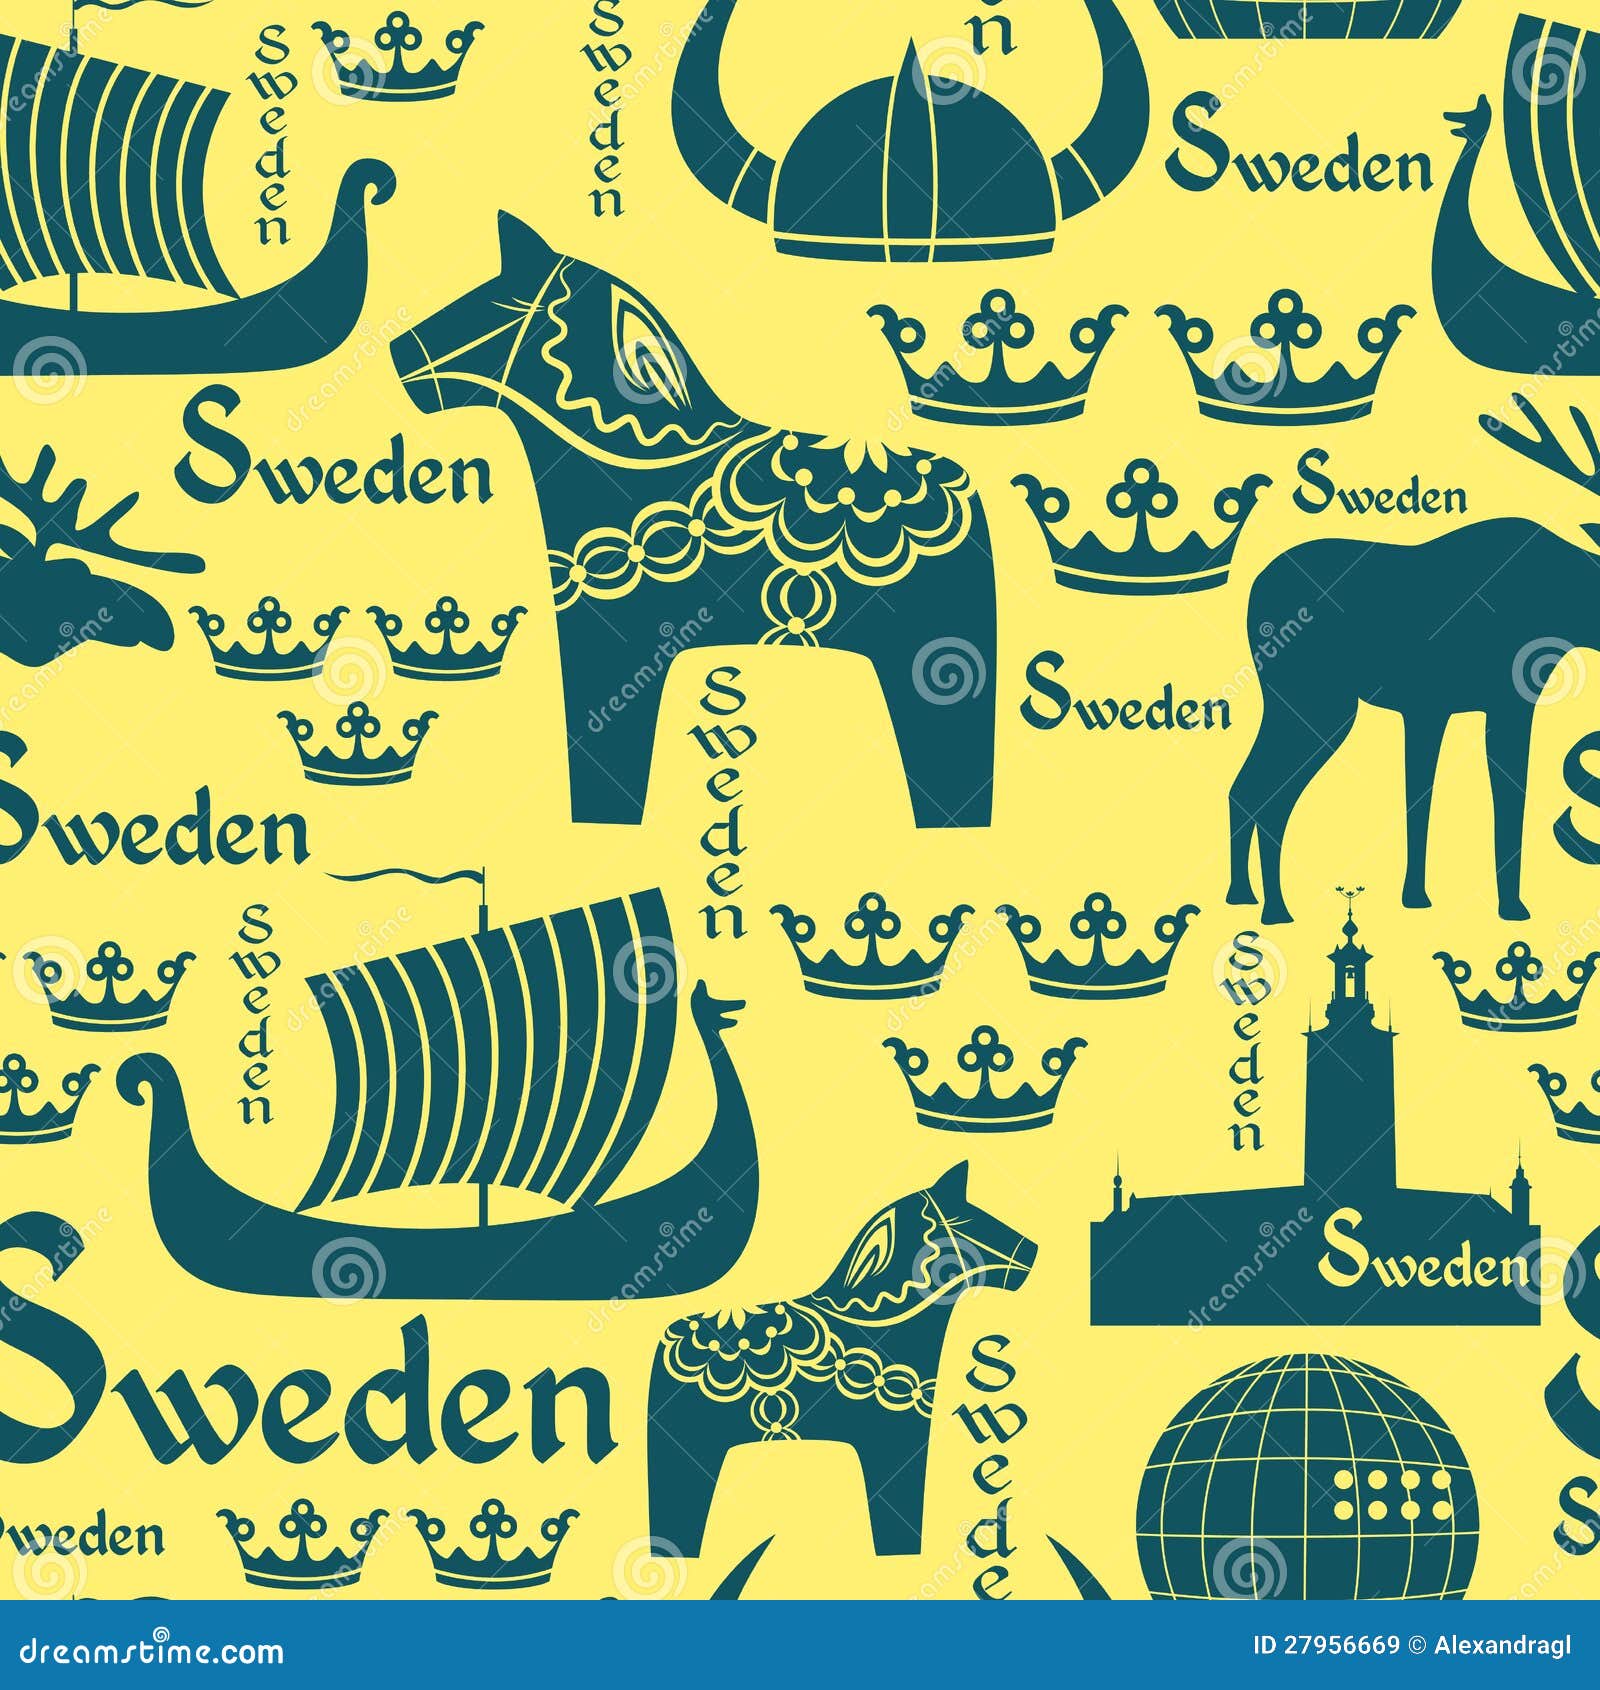 Sweden National Animal Stock Illustrations – 187 Sweden National Animal  Stock Illustrations, Vectors & Clipart - Dreamstime